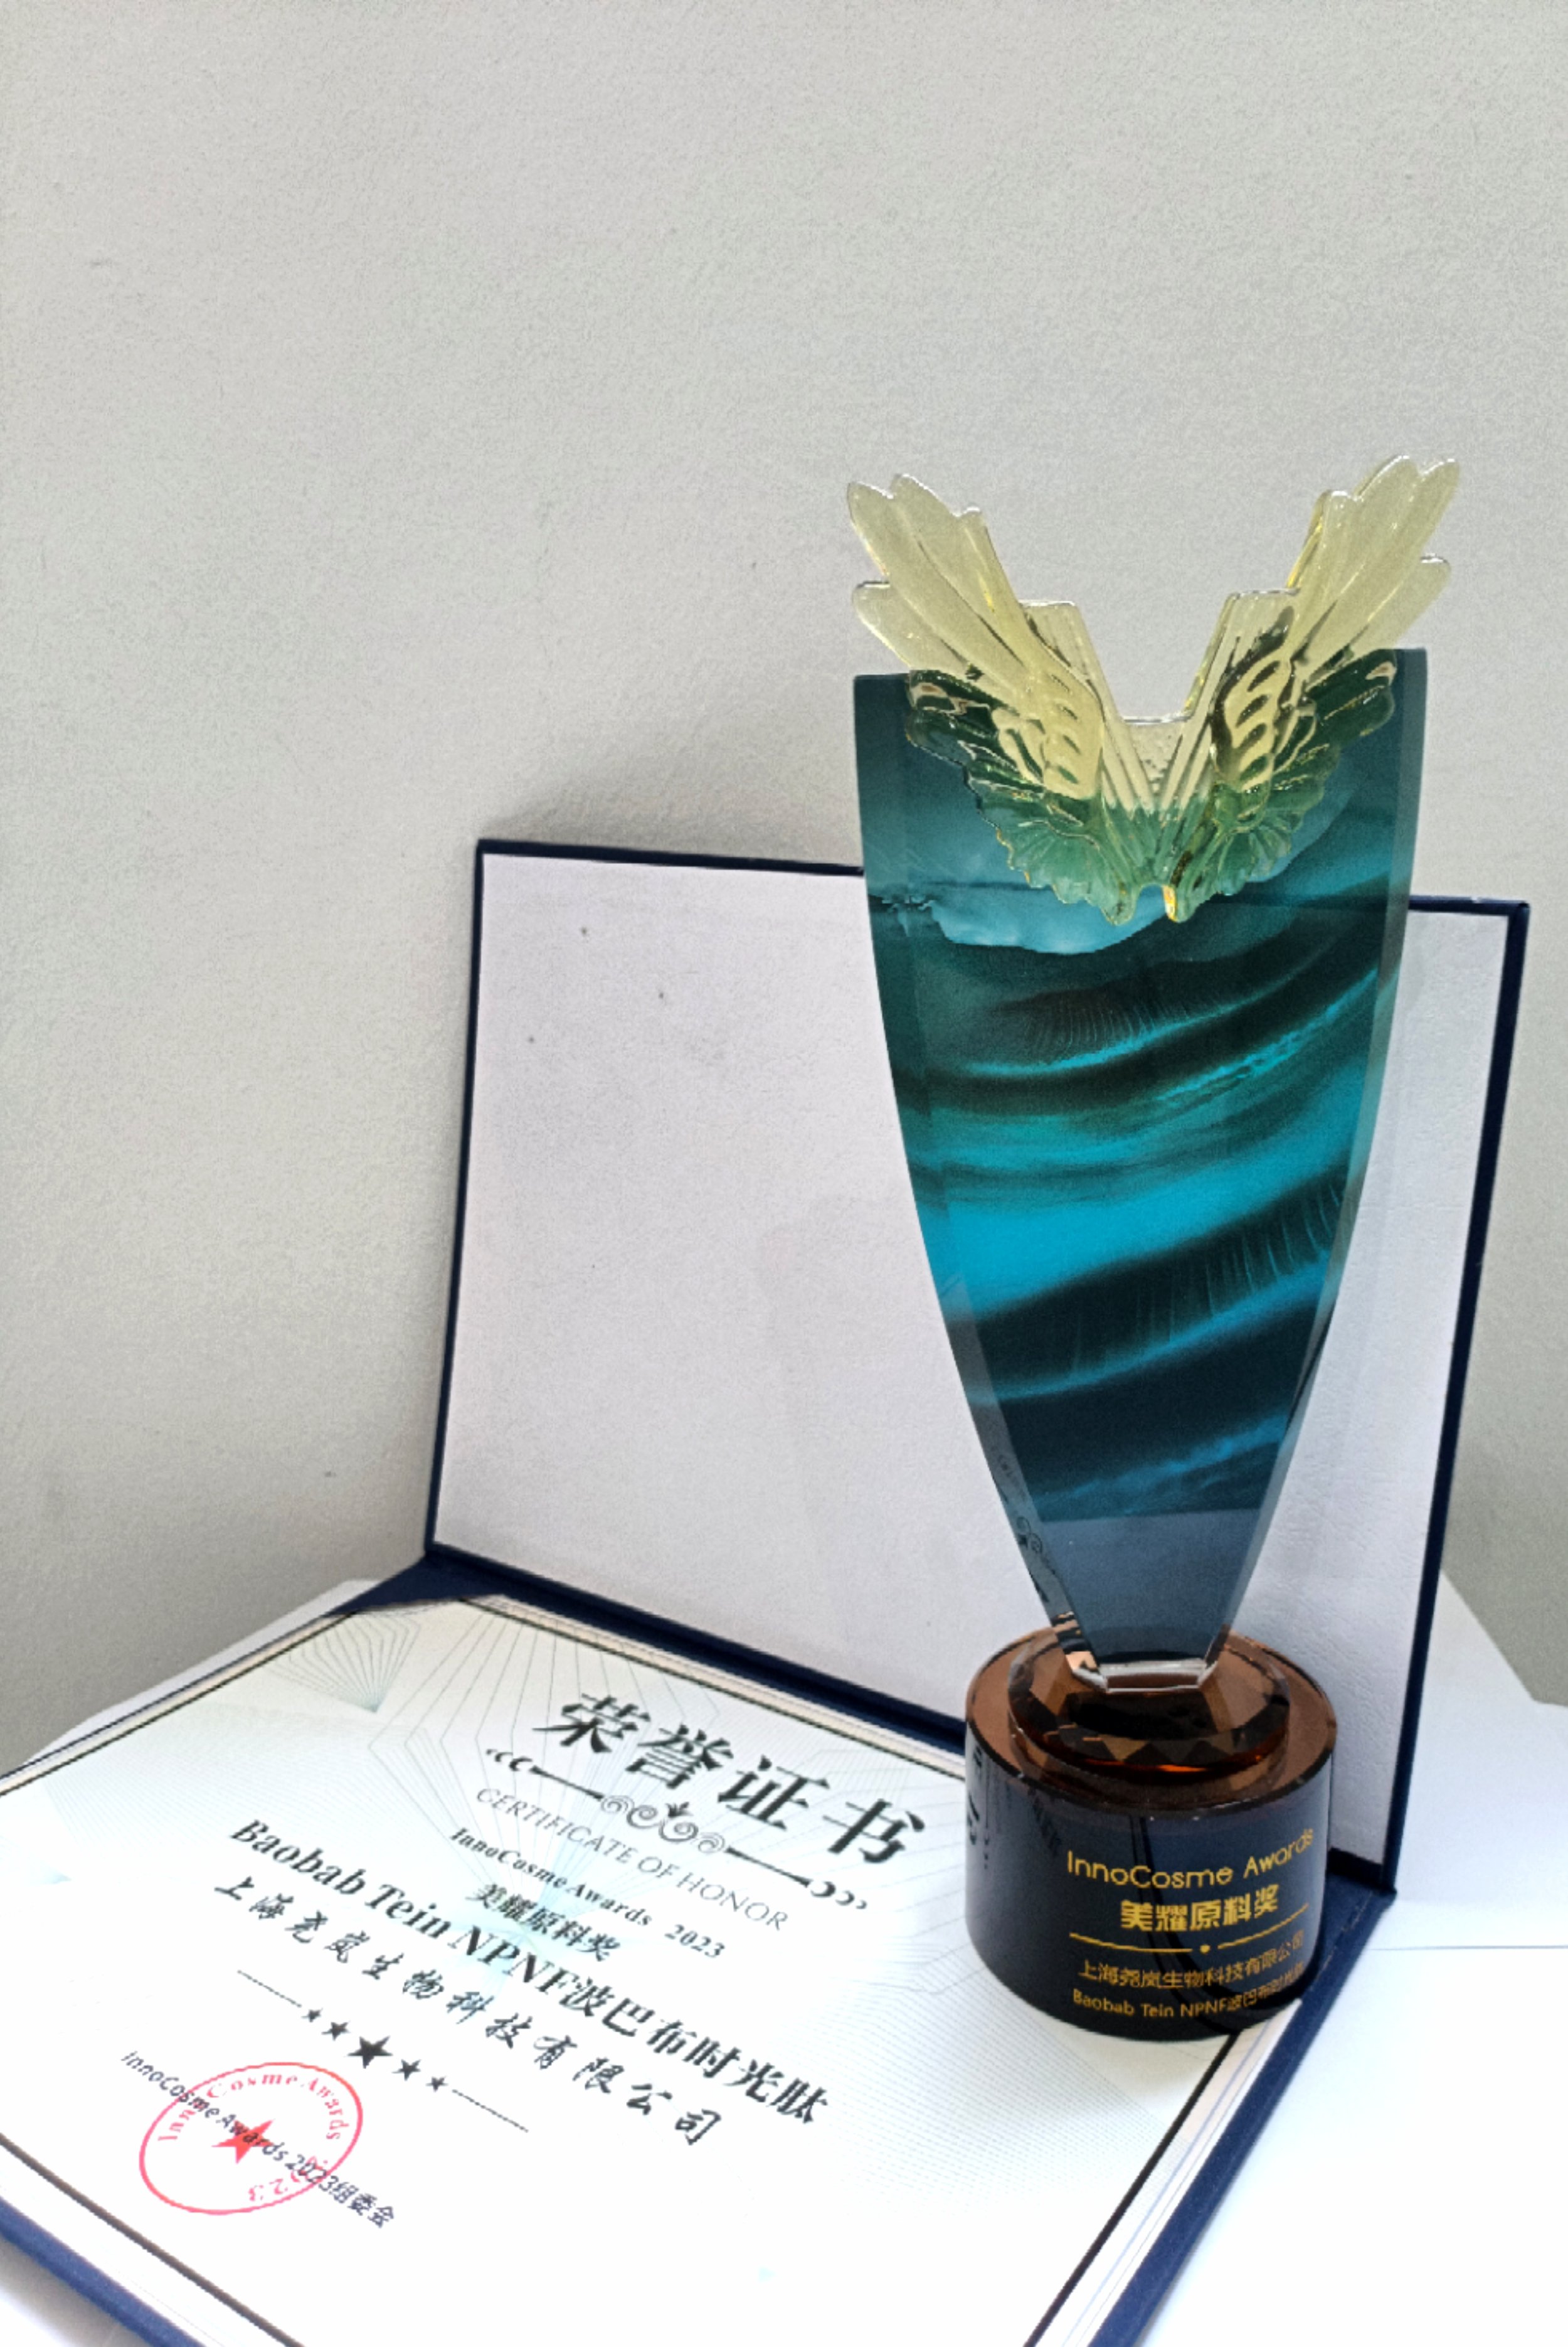 Baobab Tein NPNF® a reçu le titre prestigieux d'"Ingrédient le plus créatif" lors des InnoCosme Awards 2023 !